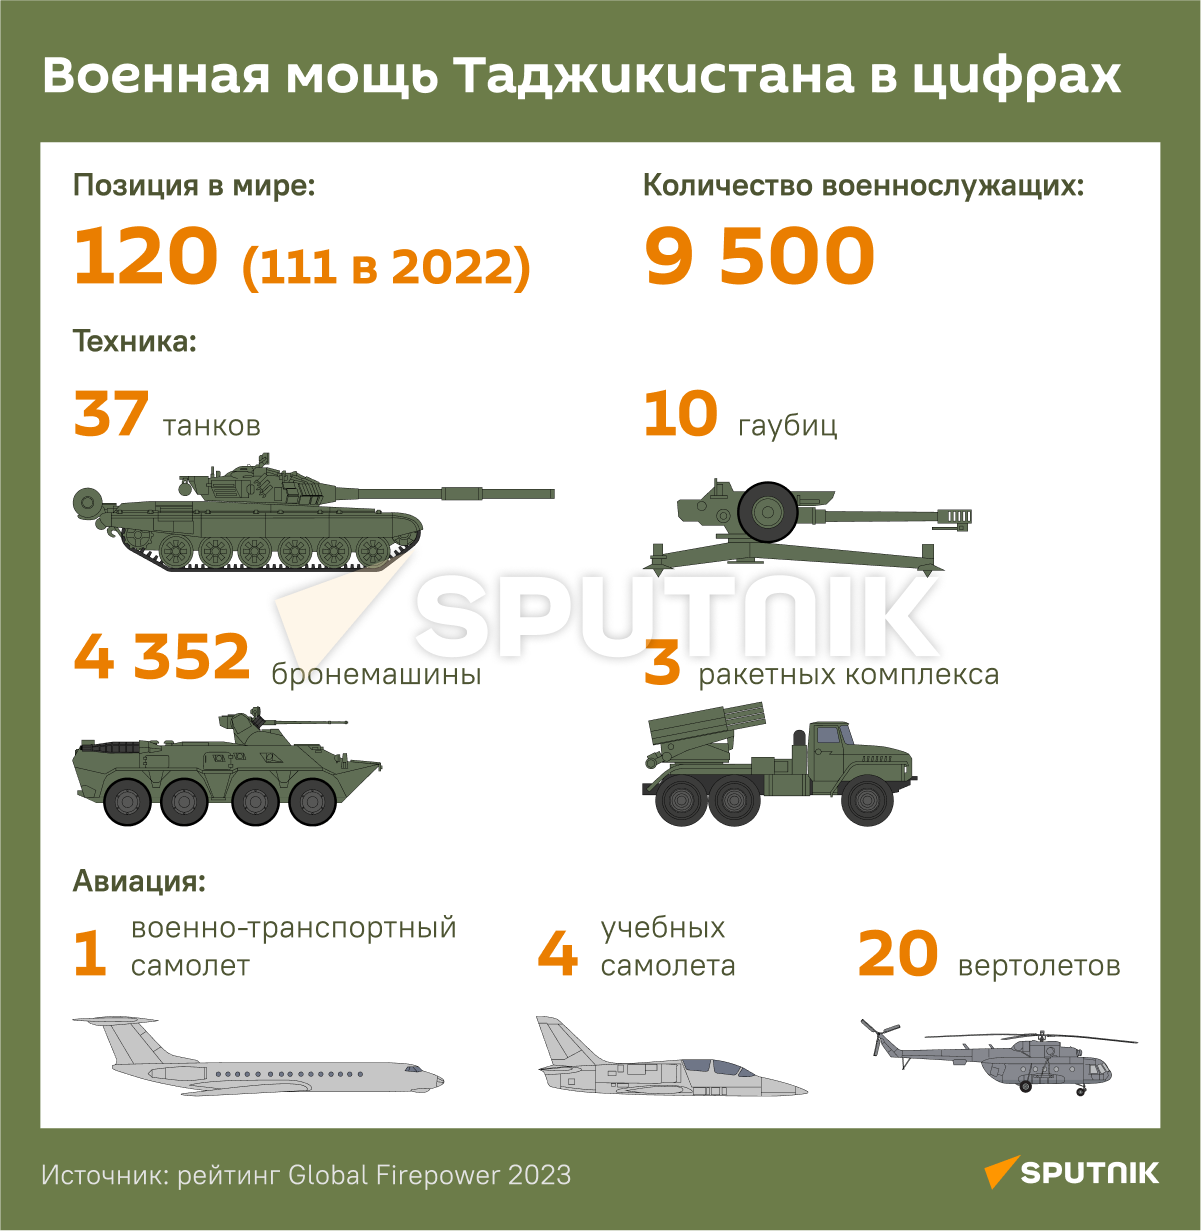 Военная техника Таджикистана 2022. Численность армии Китая. Военная мощь Таджикистана.